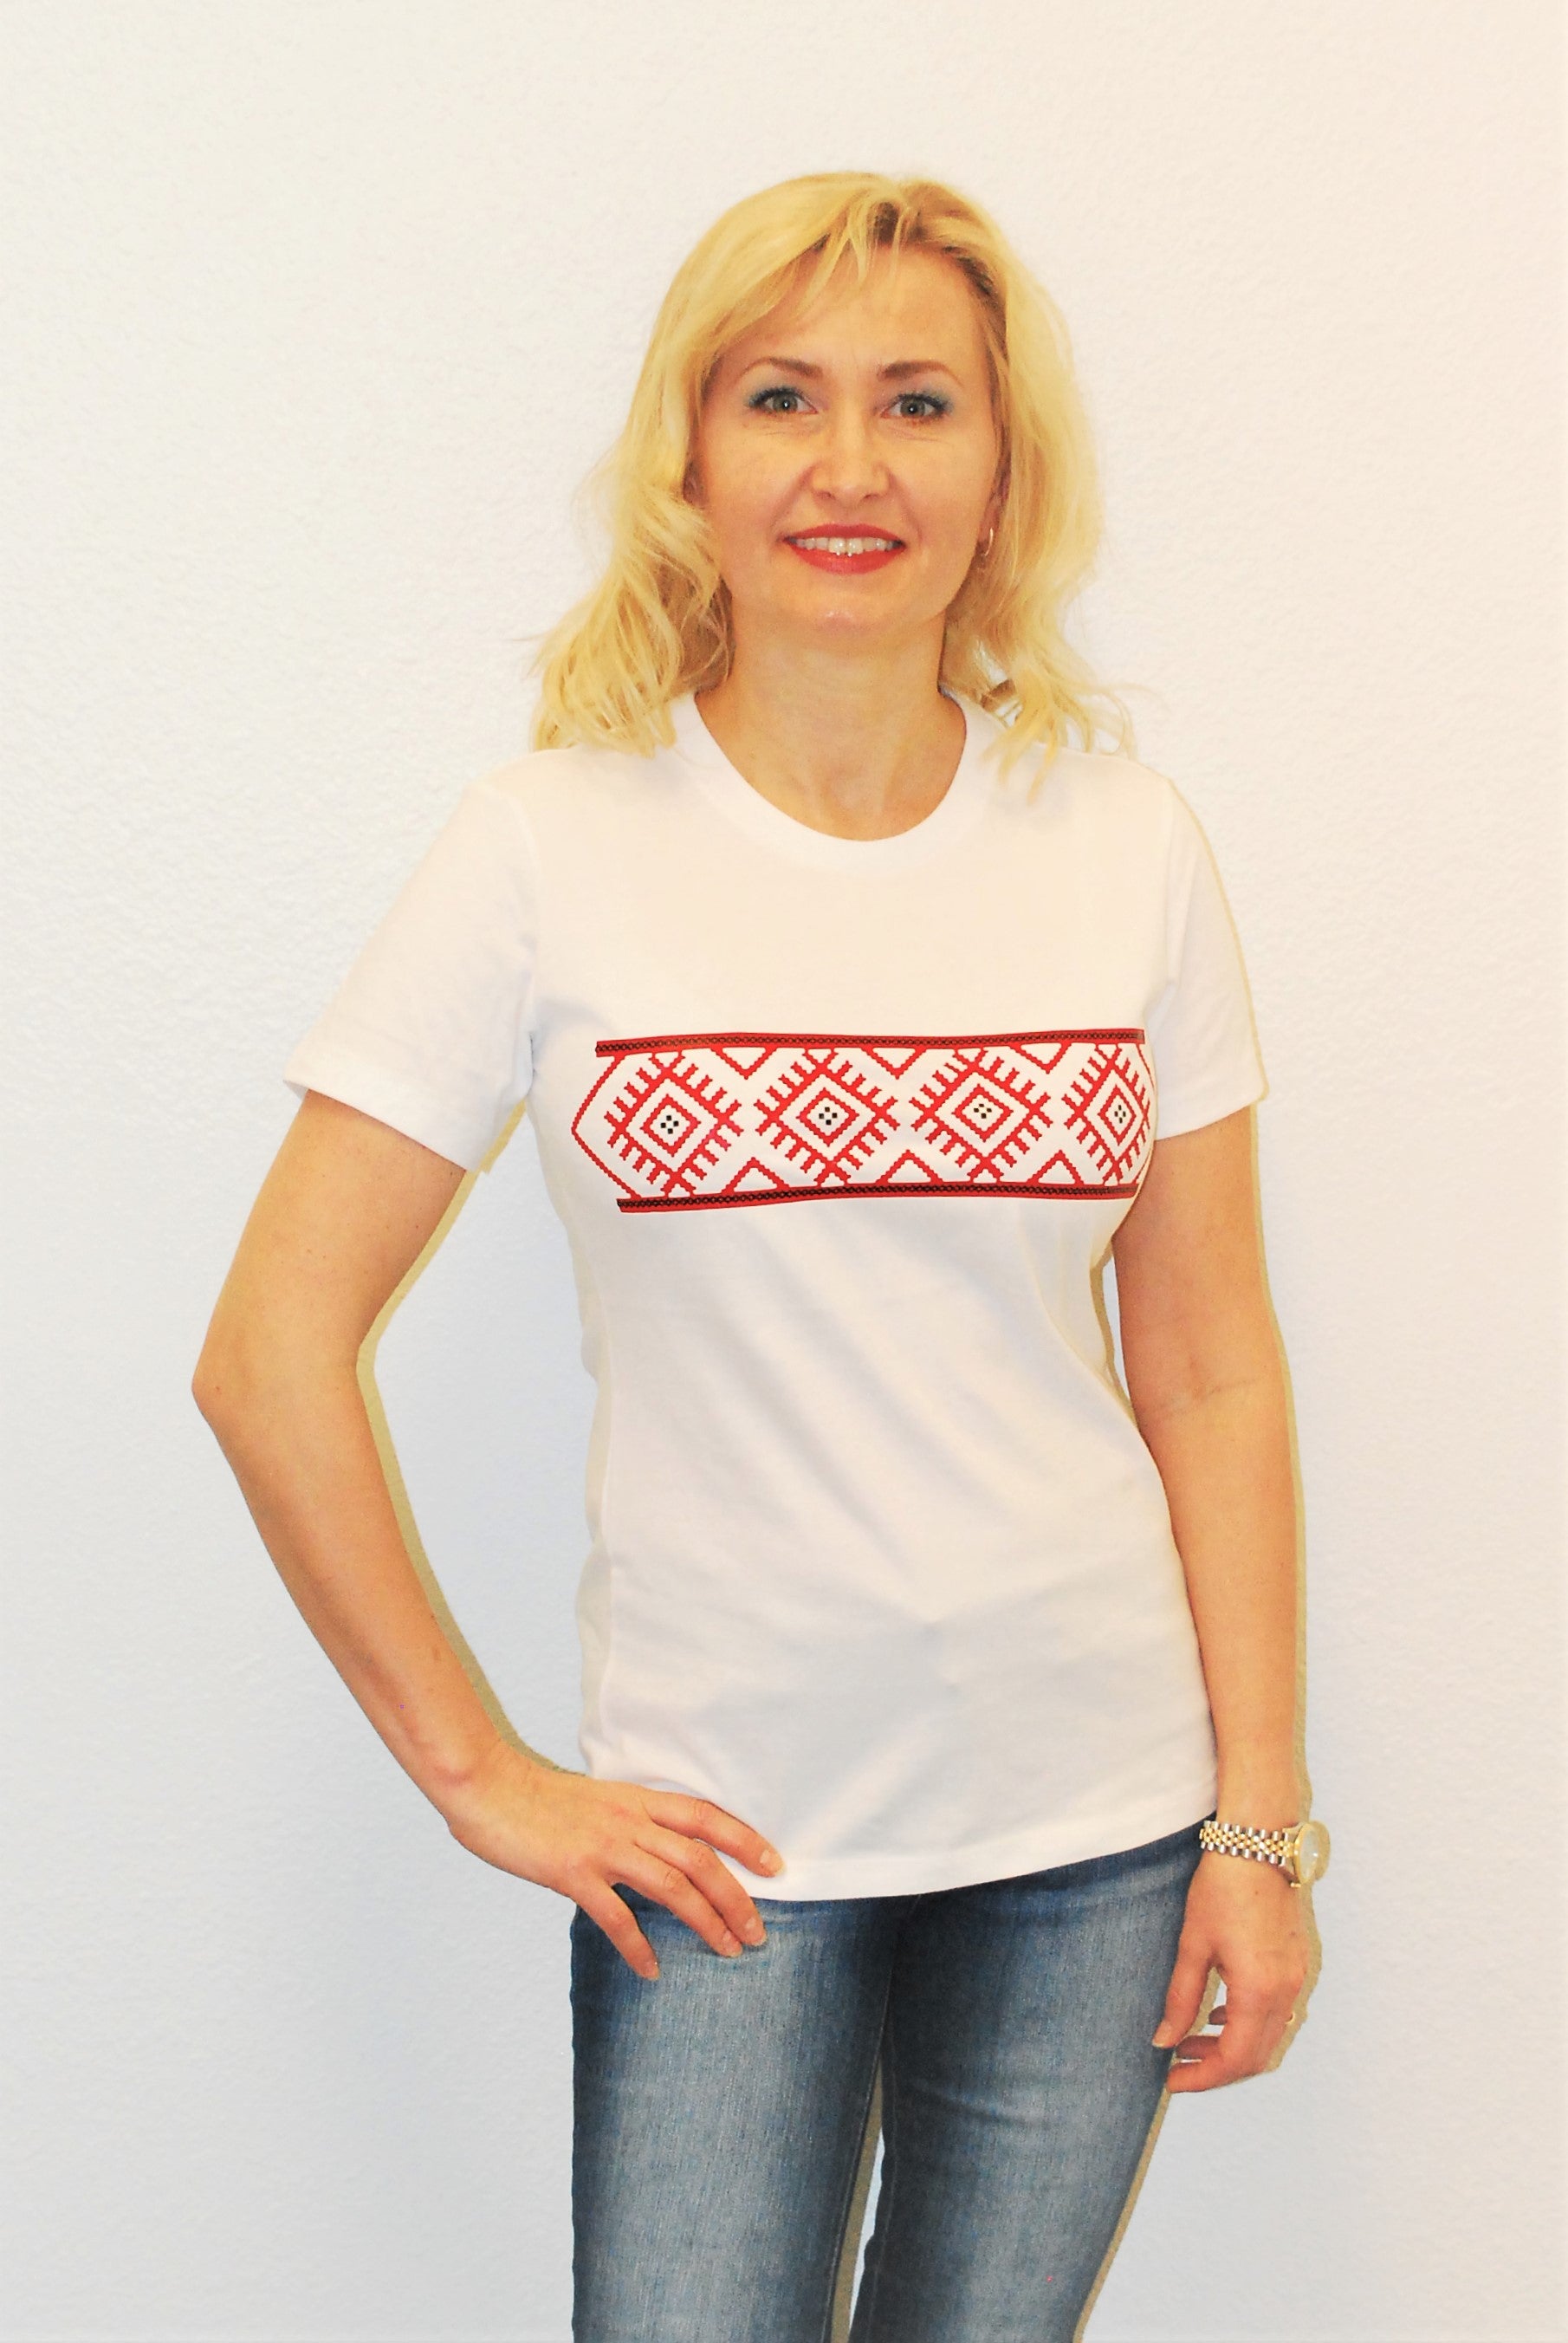 Women's tee shirt "Slavic code" white crew neck